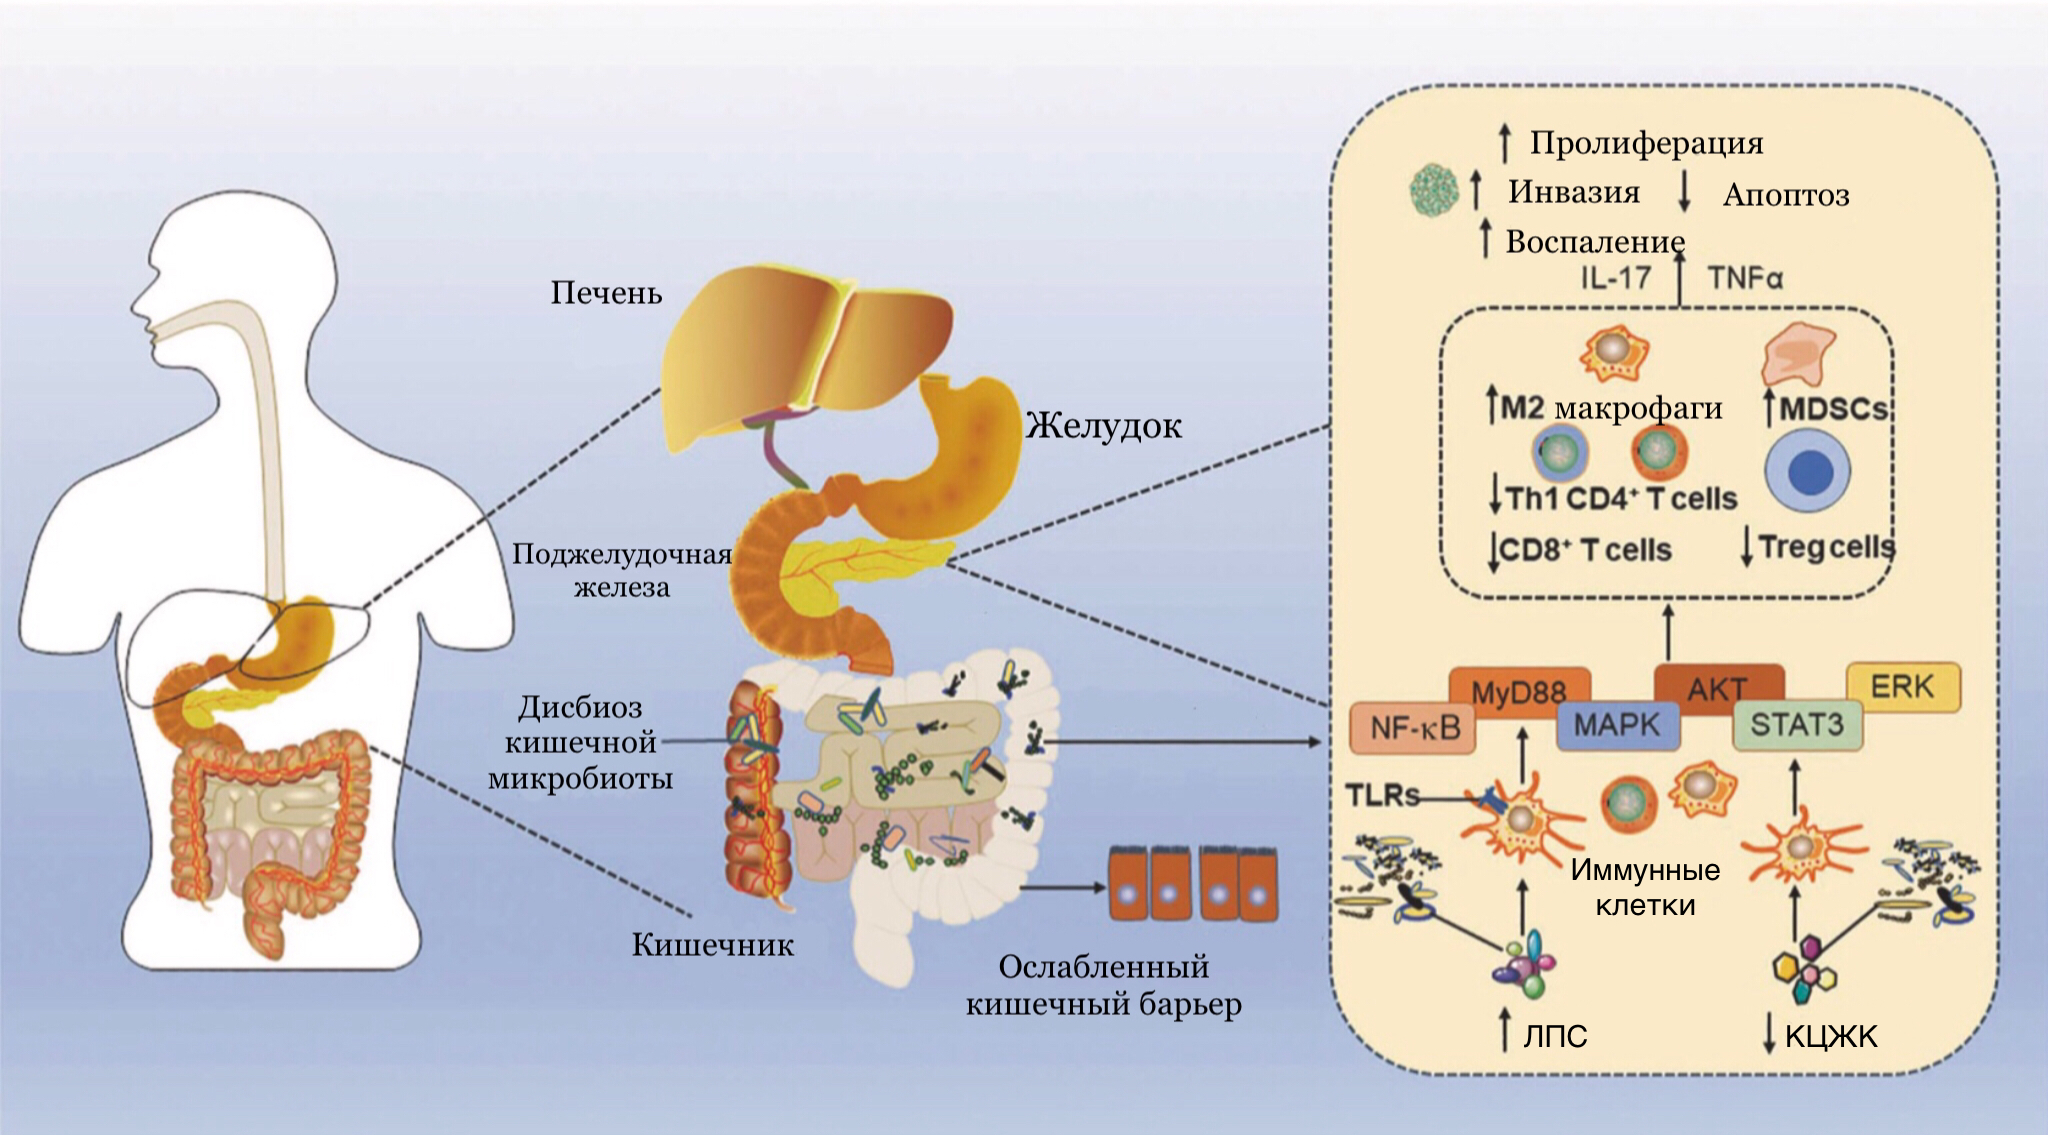 Предполагаемая связь между дисбактериозом кишечной микробиоты и раком поджелудочной железы